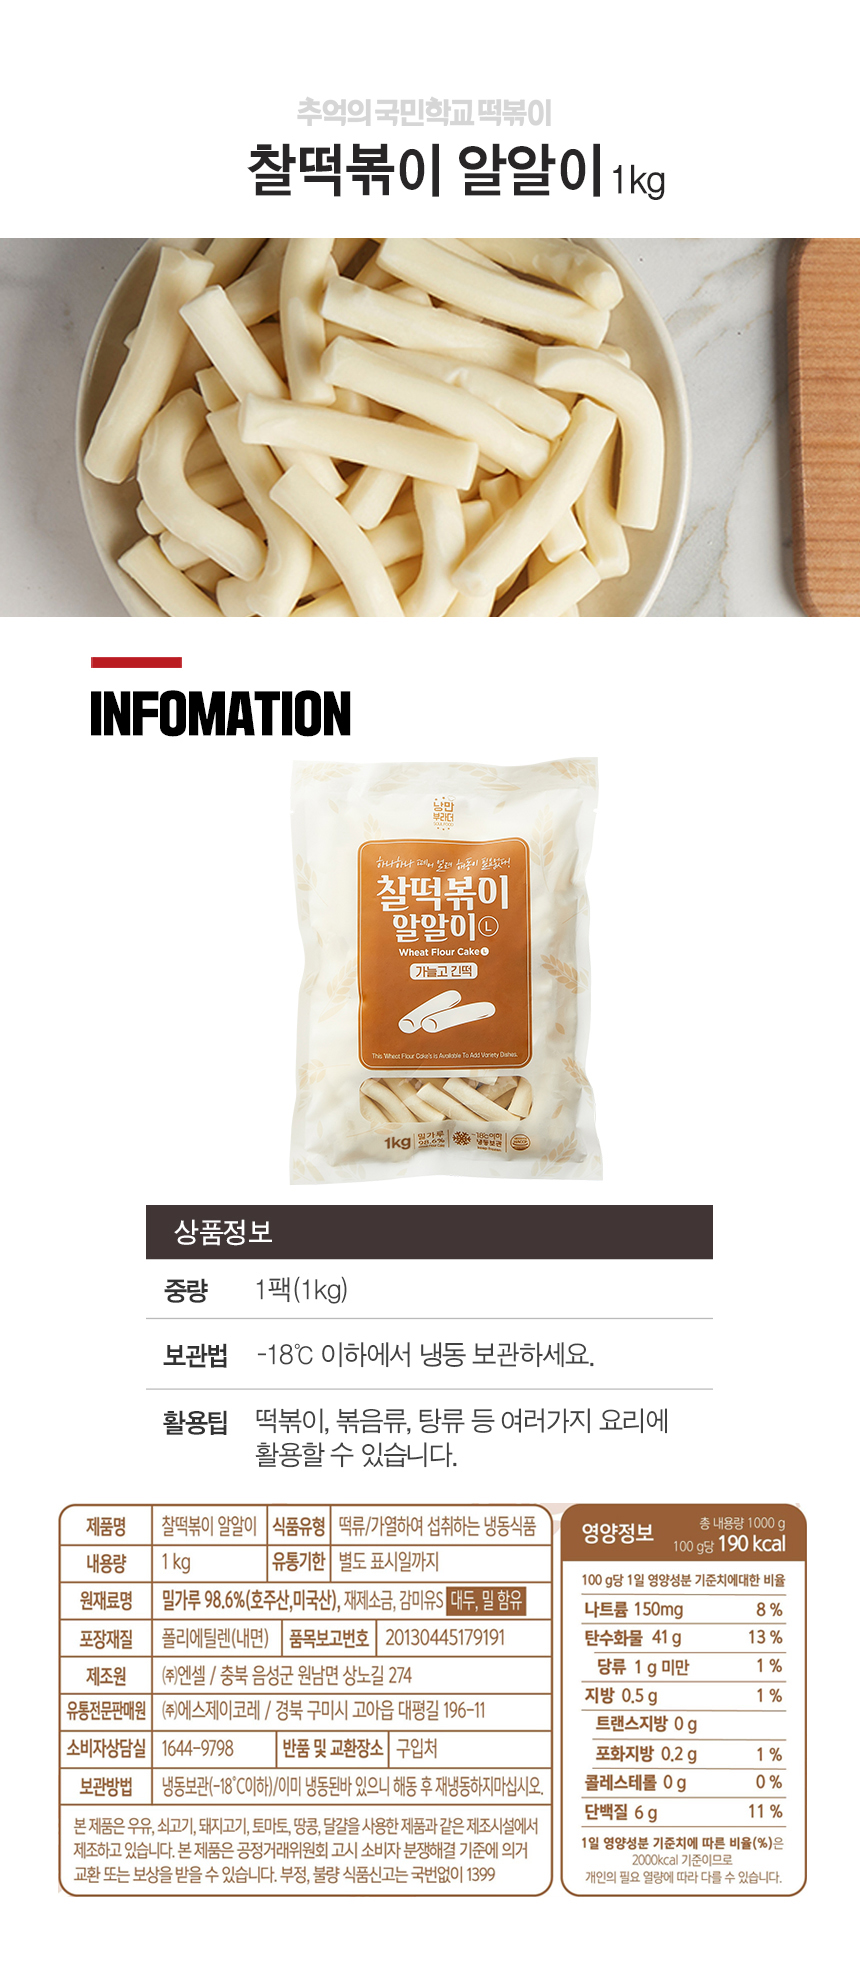 韓國食品-[추억의 국민학교 떡볶이] 찰떡볶이 알알이 긴떡 1kg (밀떡)